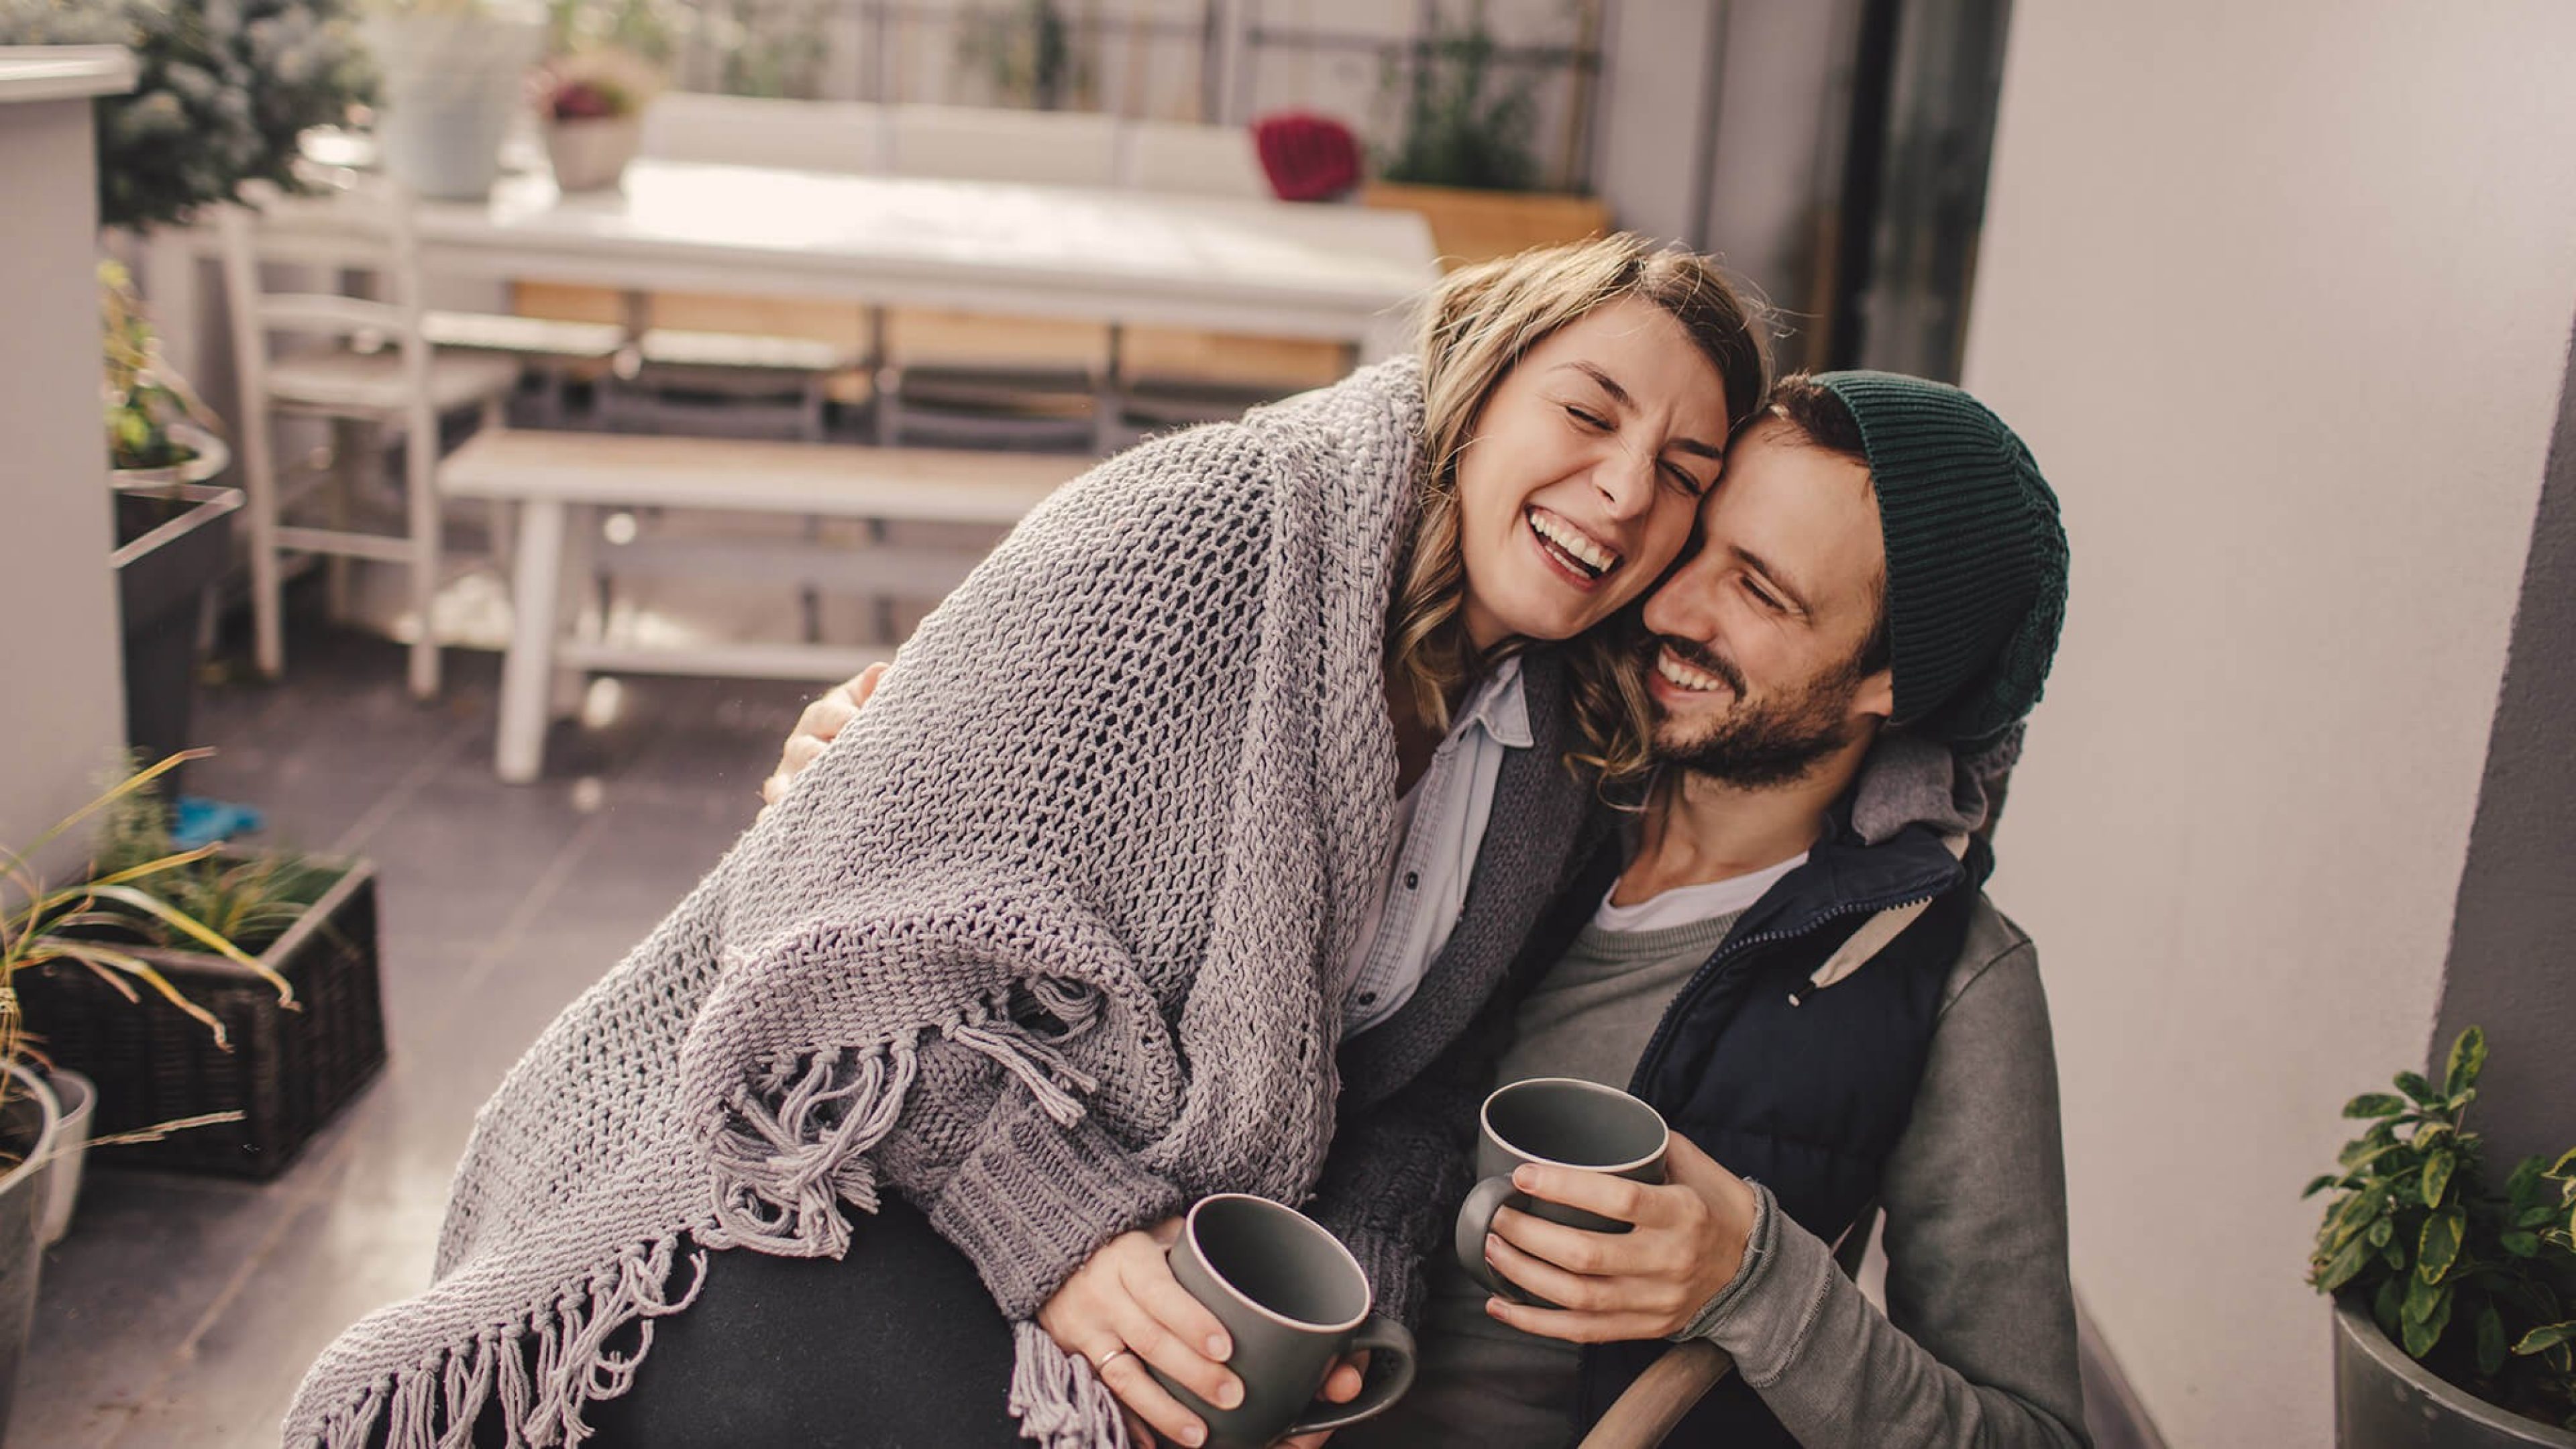 Junges Paar lachend auf einem Balkon, sie sitzt auf seinem Schoß, beide sind warm angezogen und haben eine Kaffeetasse in der Hand